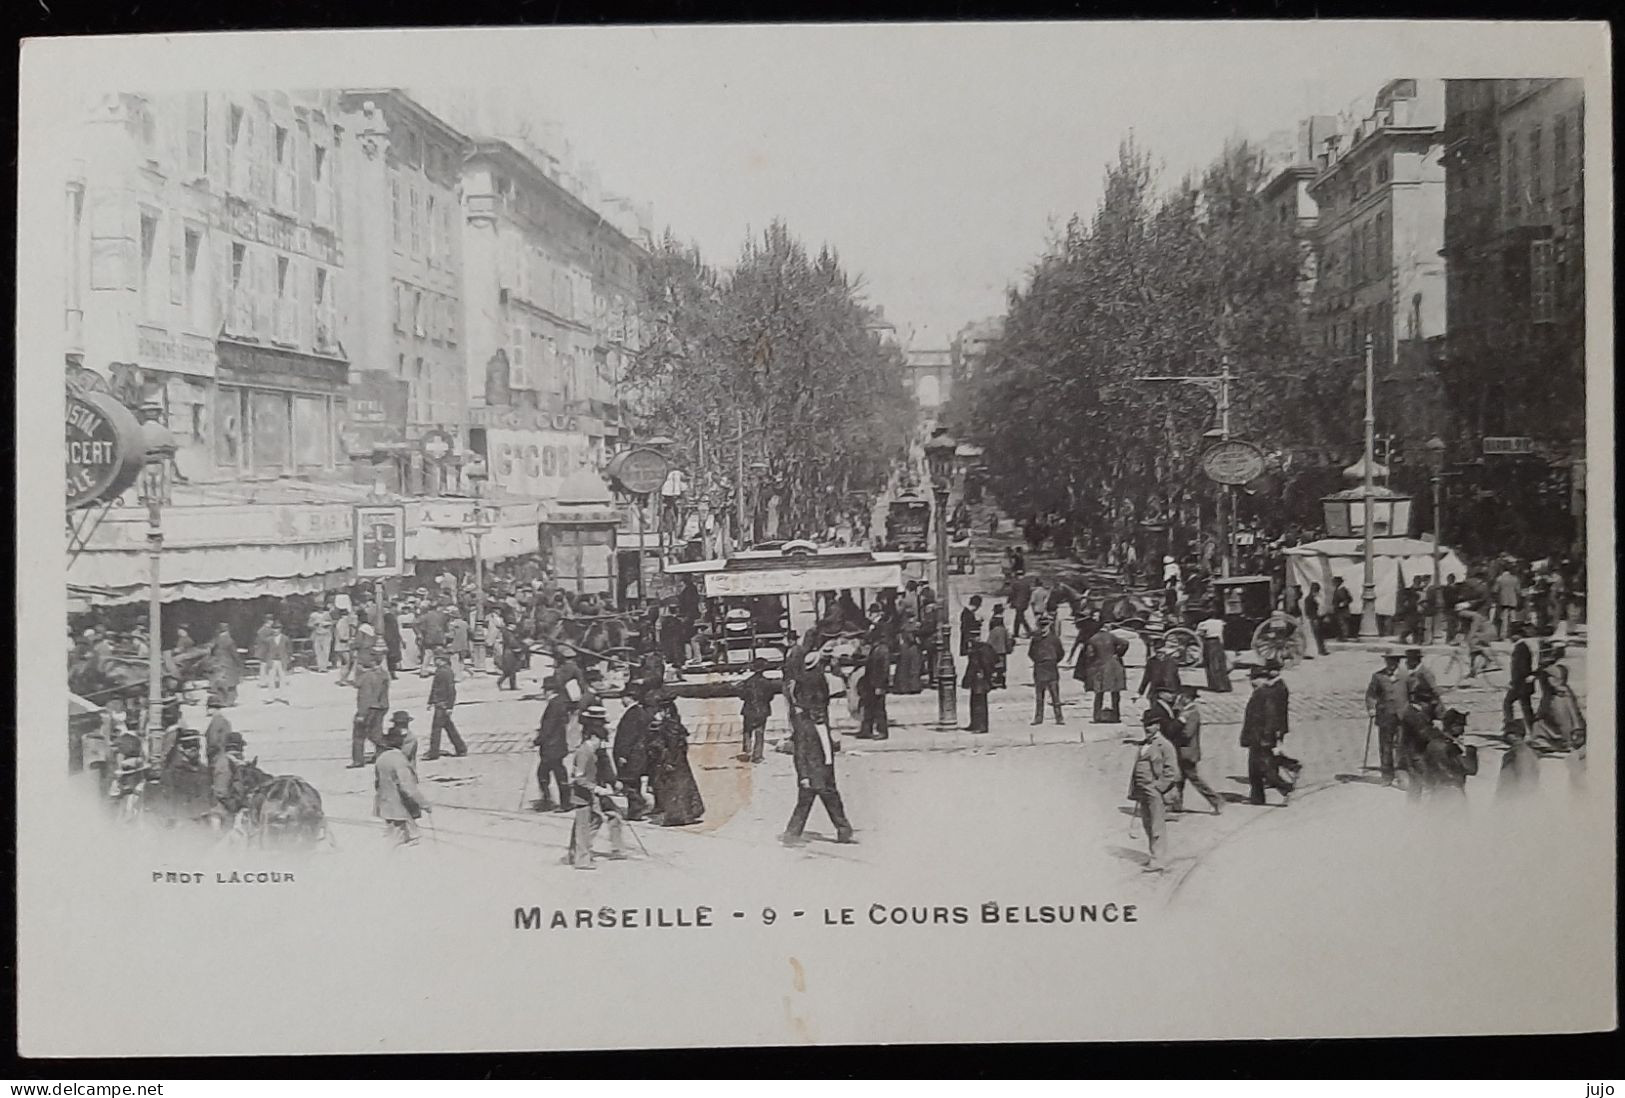 13 - MARSEILLE - 9 - LE COURS BELSUNCE - Aminée - Photo LACOUR - Canebière, Stadscentrum